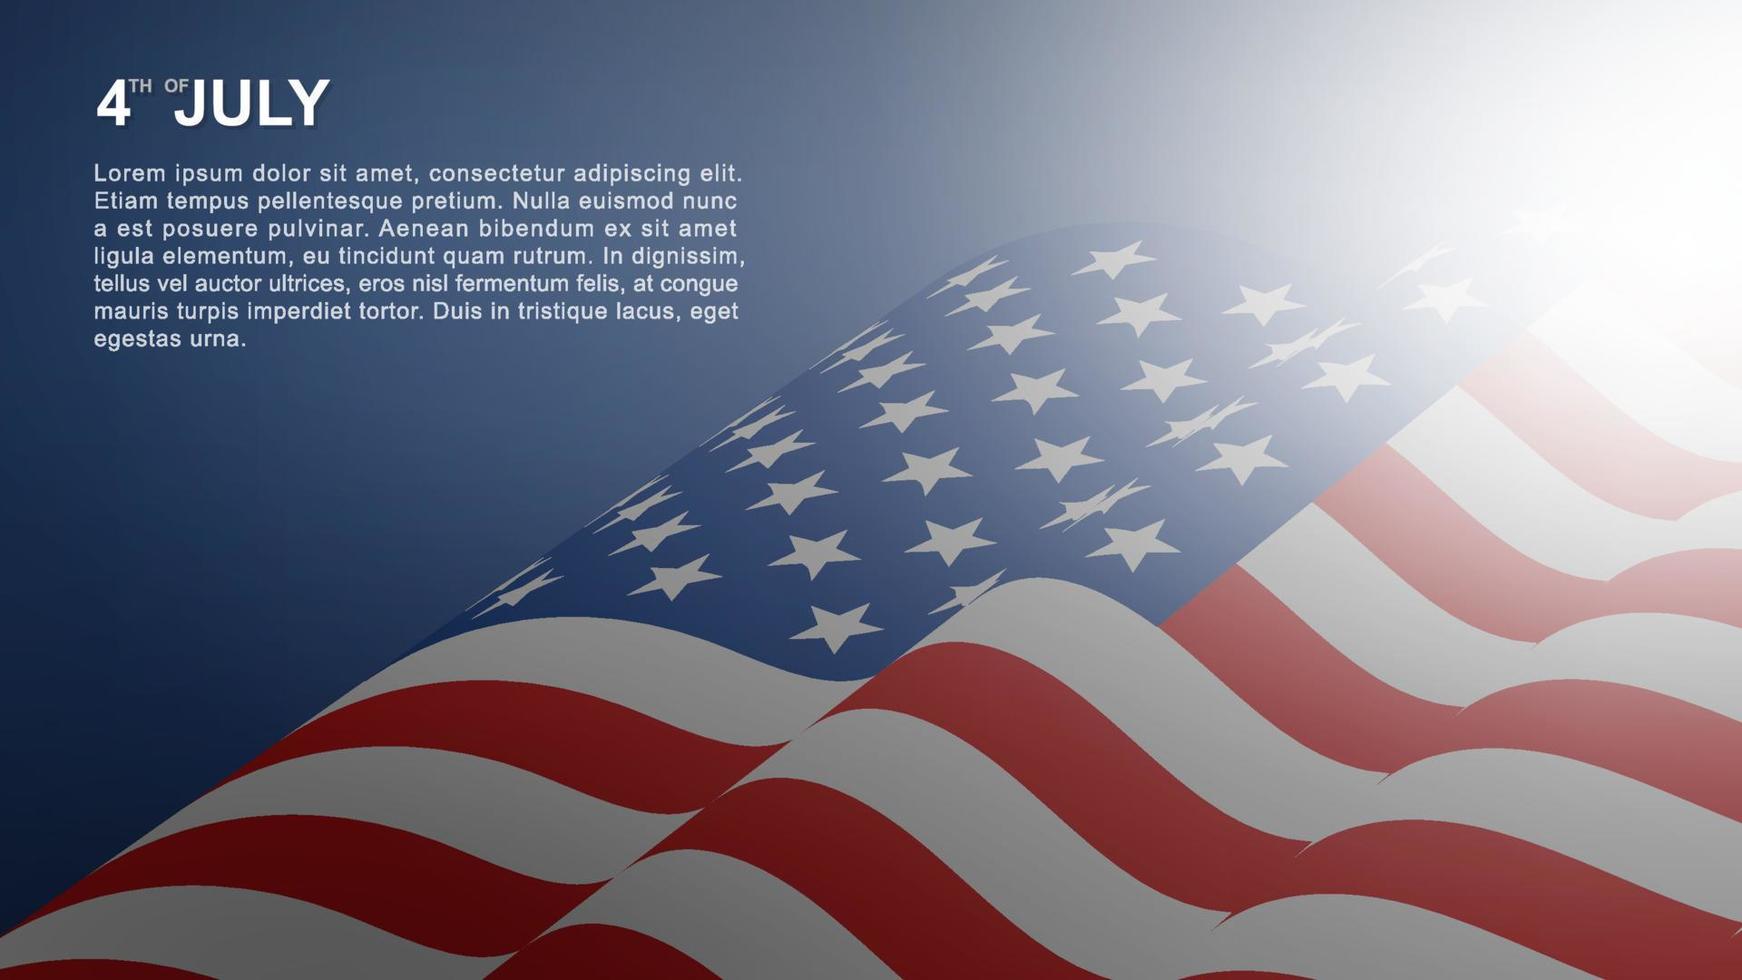 4 juli achtergrond voor usa onafhankelijkheidsdag met blauwe achtergrond en amerikaanse vlag. vector. vector